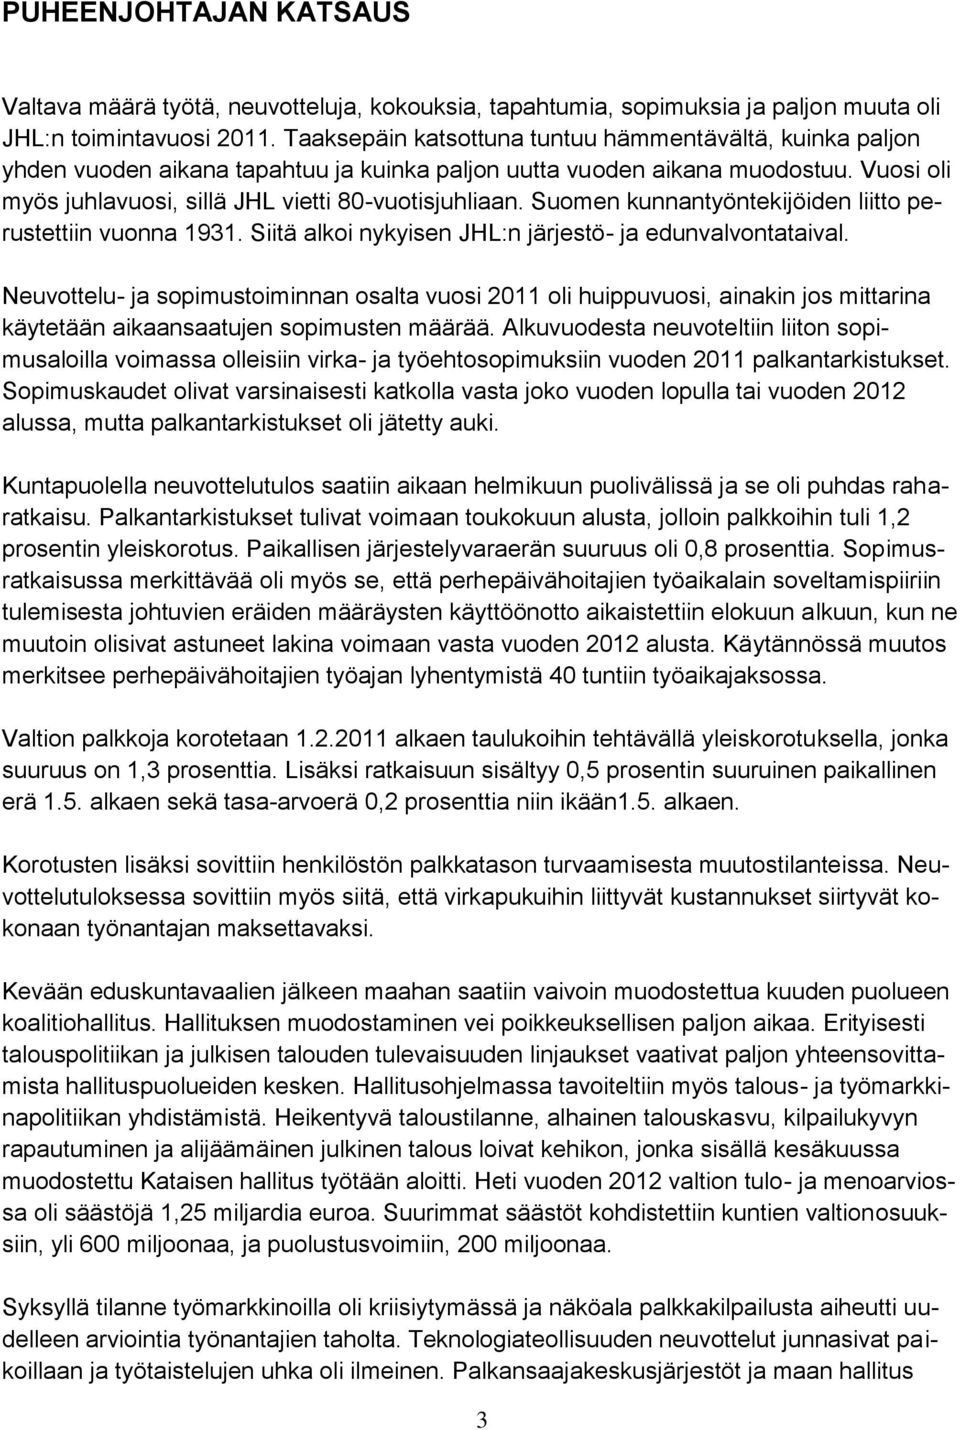 Suomen kunnantyöntekijöiden liitto perustettiin vuonna 1931. Siitä alkoi nykyisen JHL:n järjestö- ja edunvalvontataival.